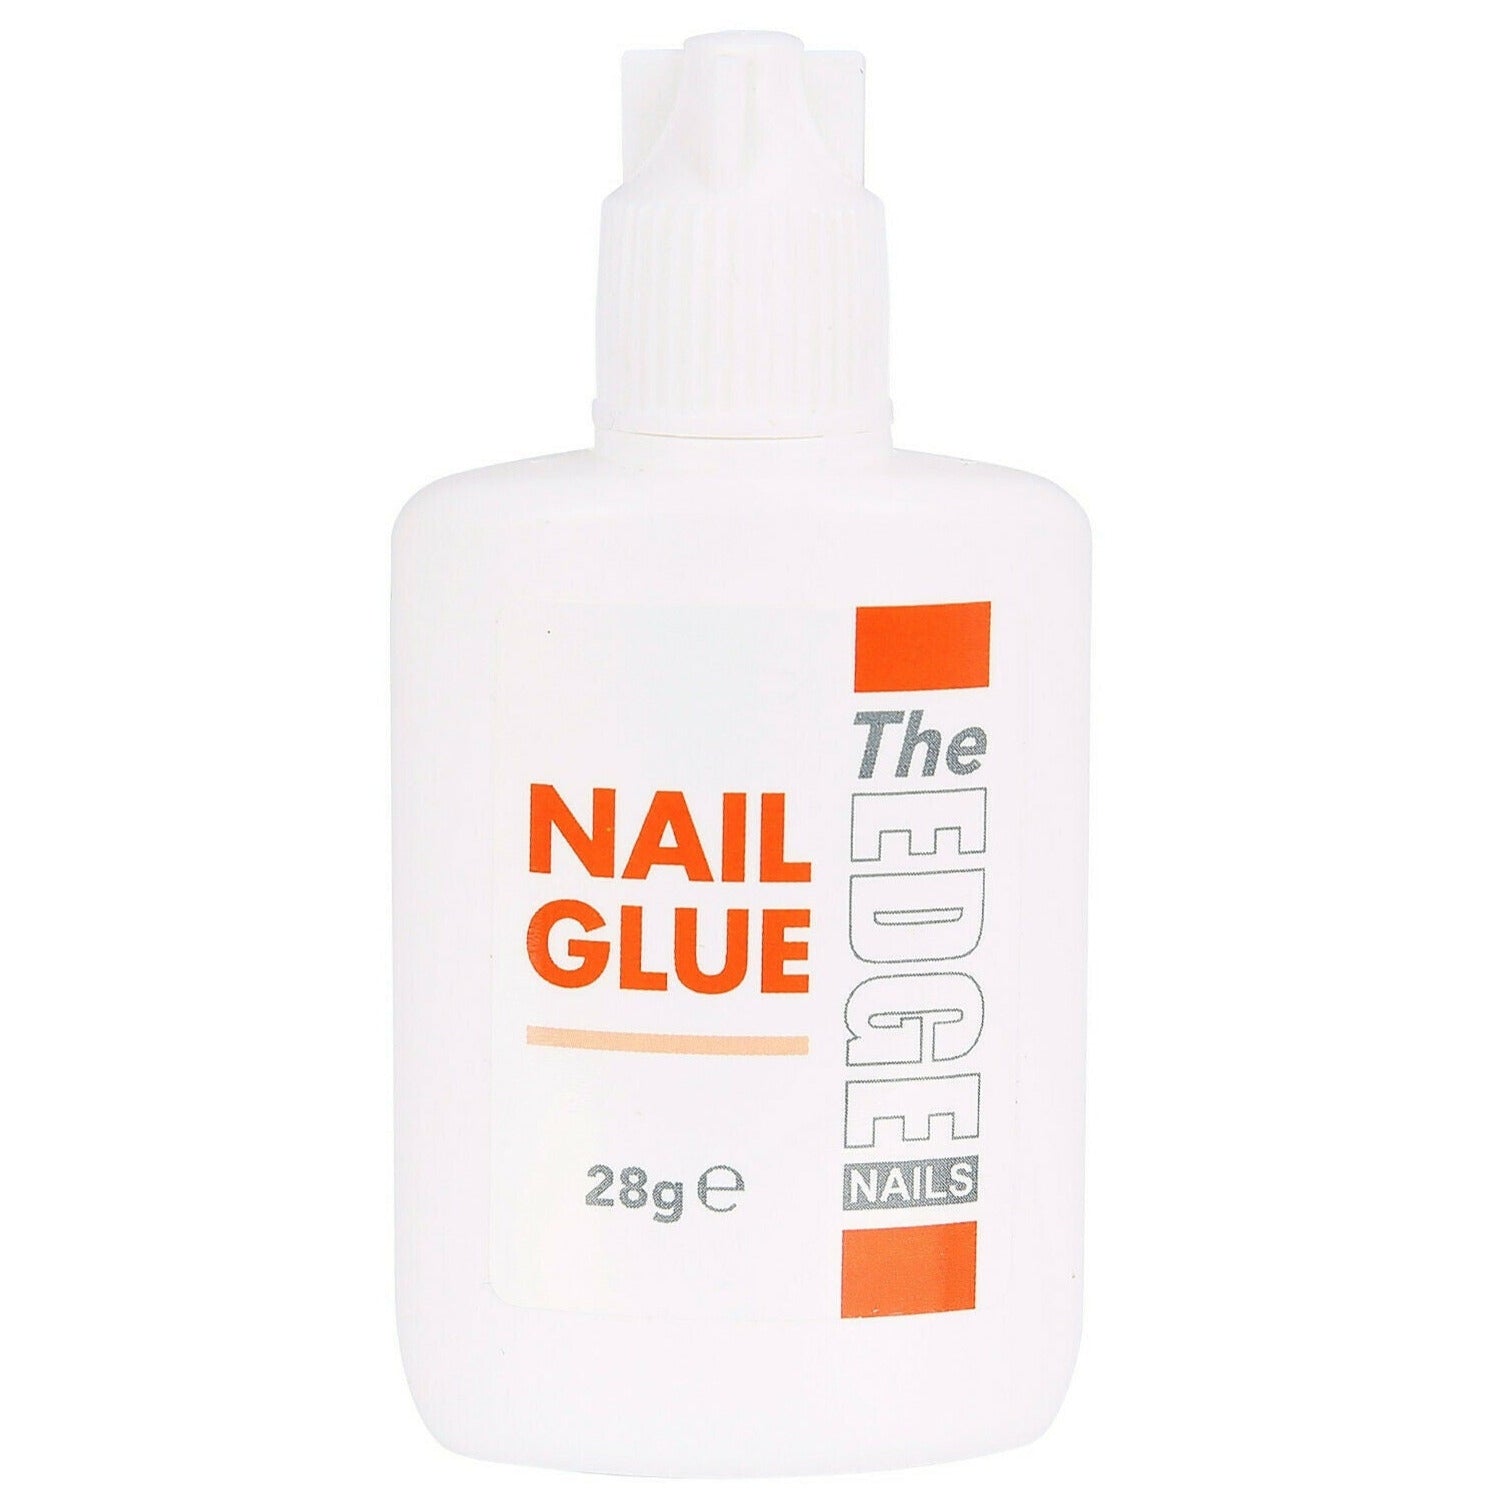 The Edge Nail Glue 28g Gram UV Gel Acrylic Nails Strong False Adhesive For Nail Tips